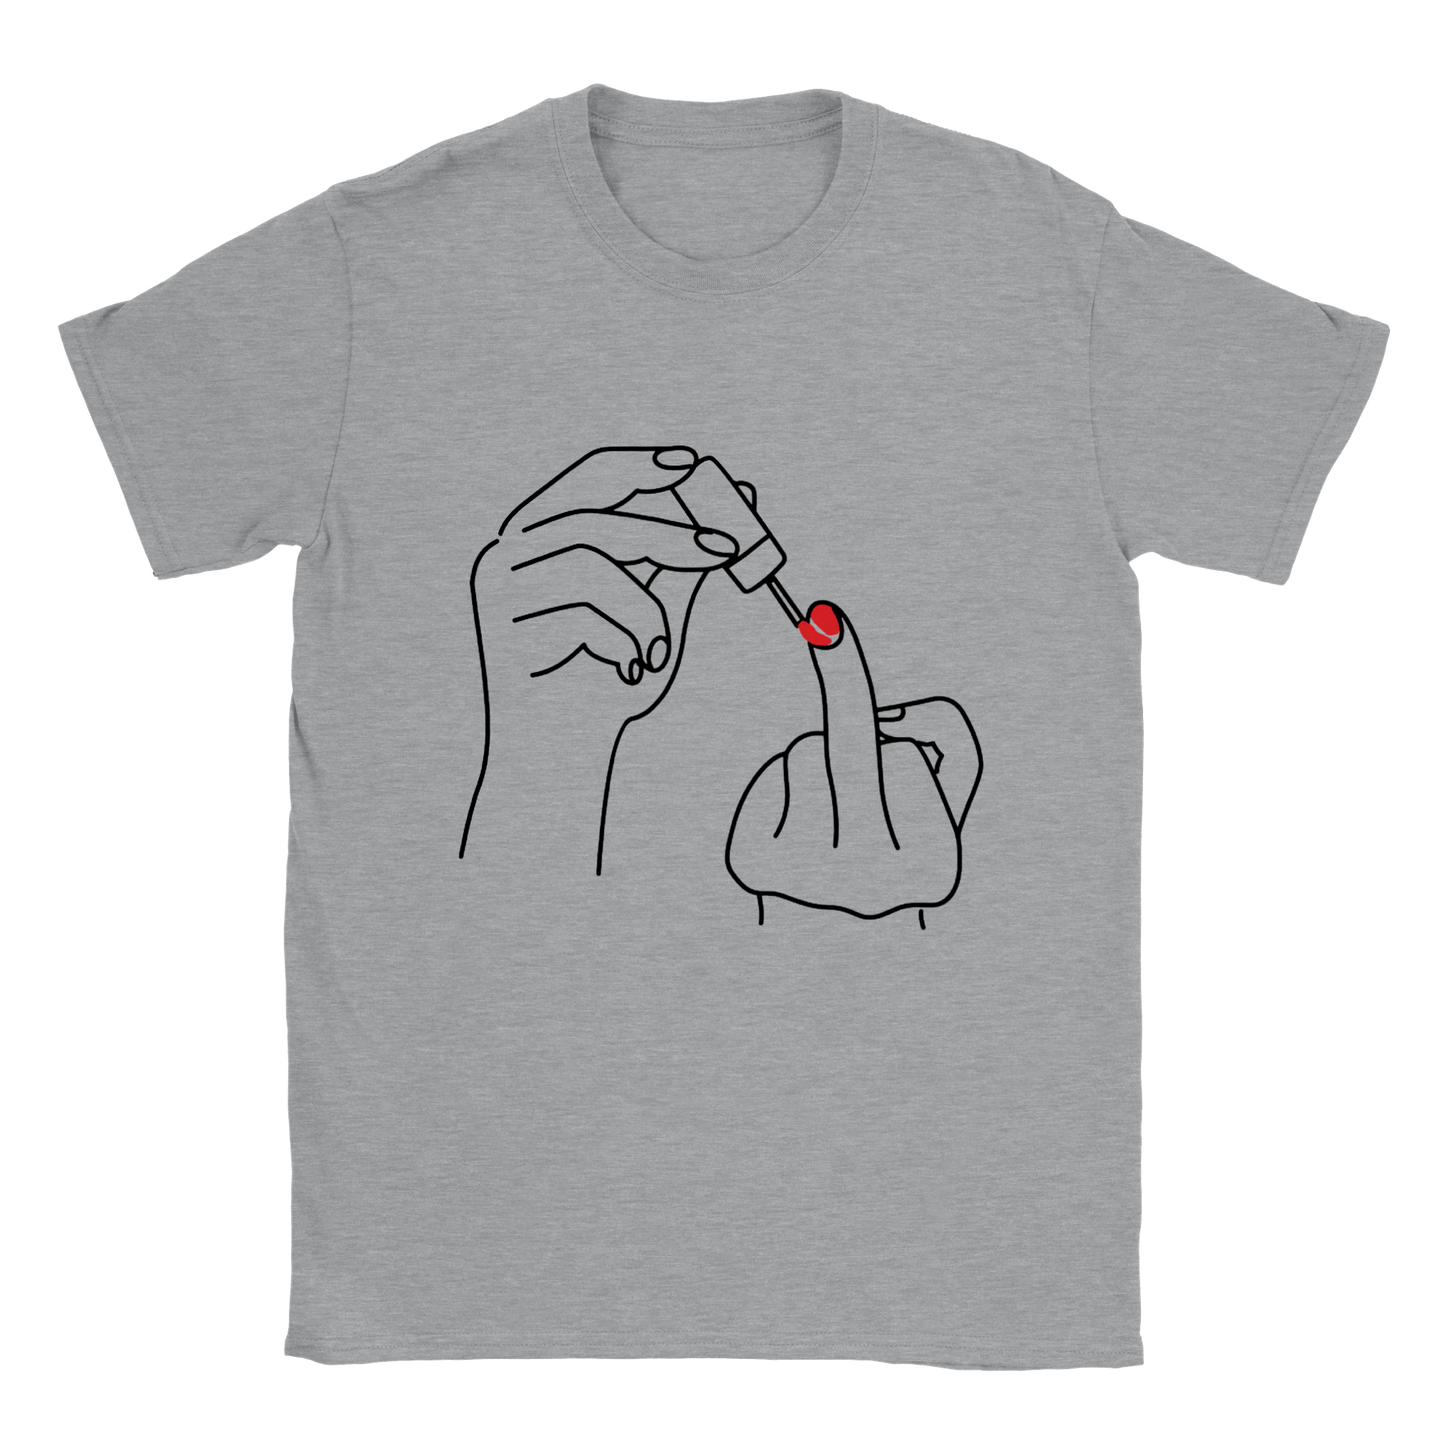 Ladylike Middle Finger - Classic Unisex Crewneck T-shirt